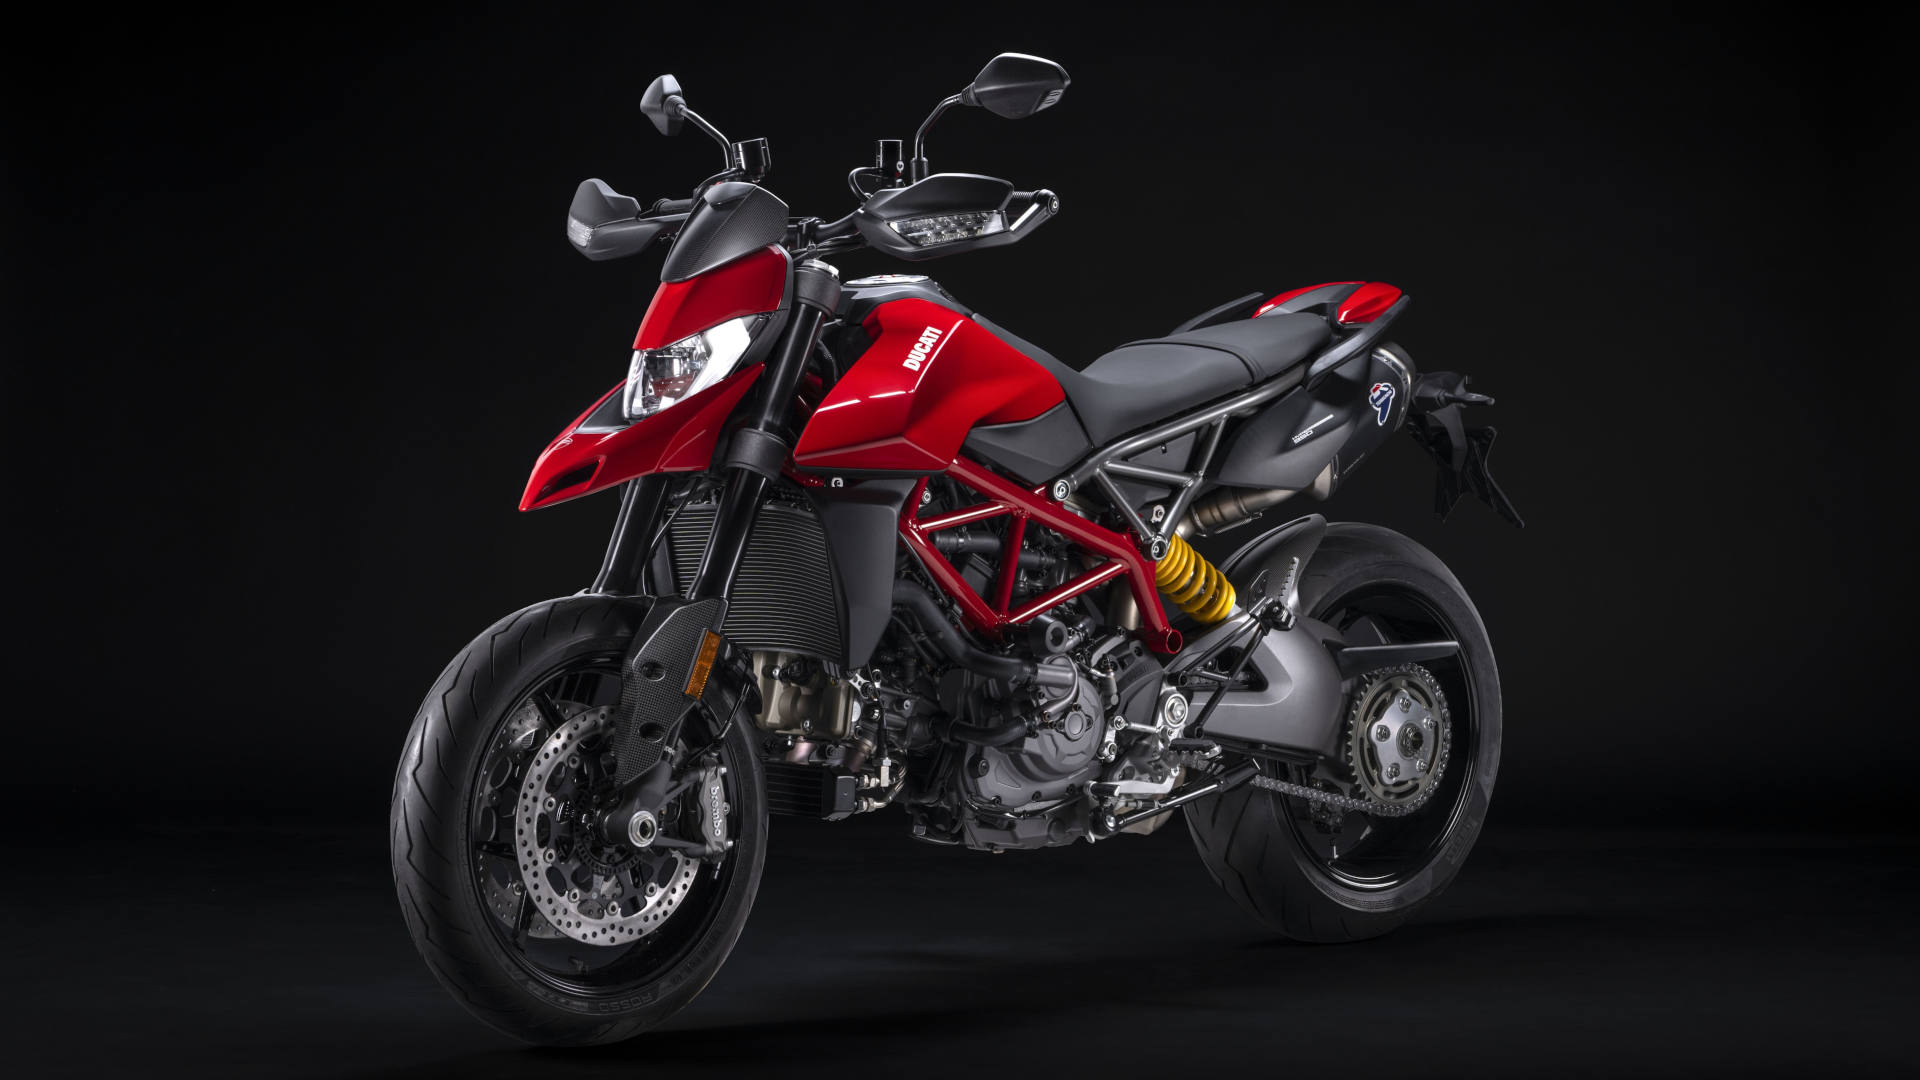 La Hypermotard 950 se potencia aún más con estos accesorios Ducati Performance